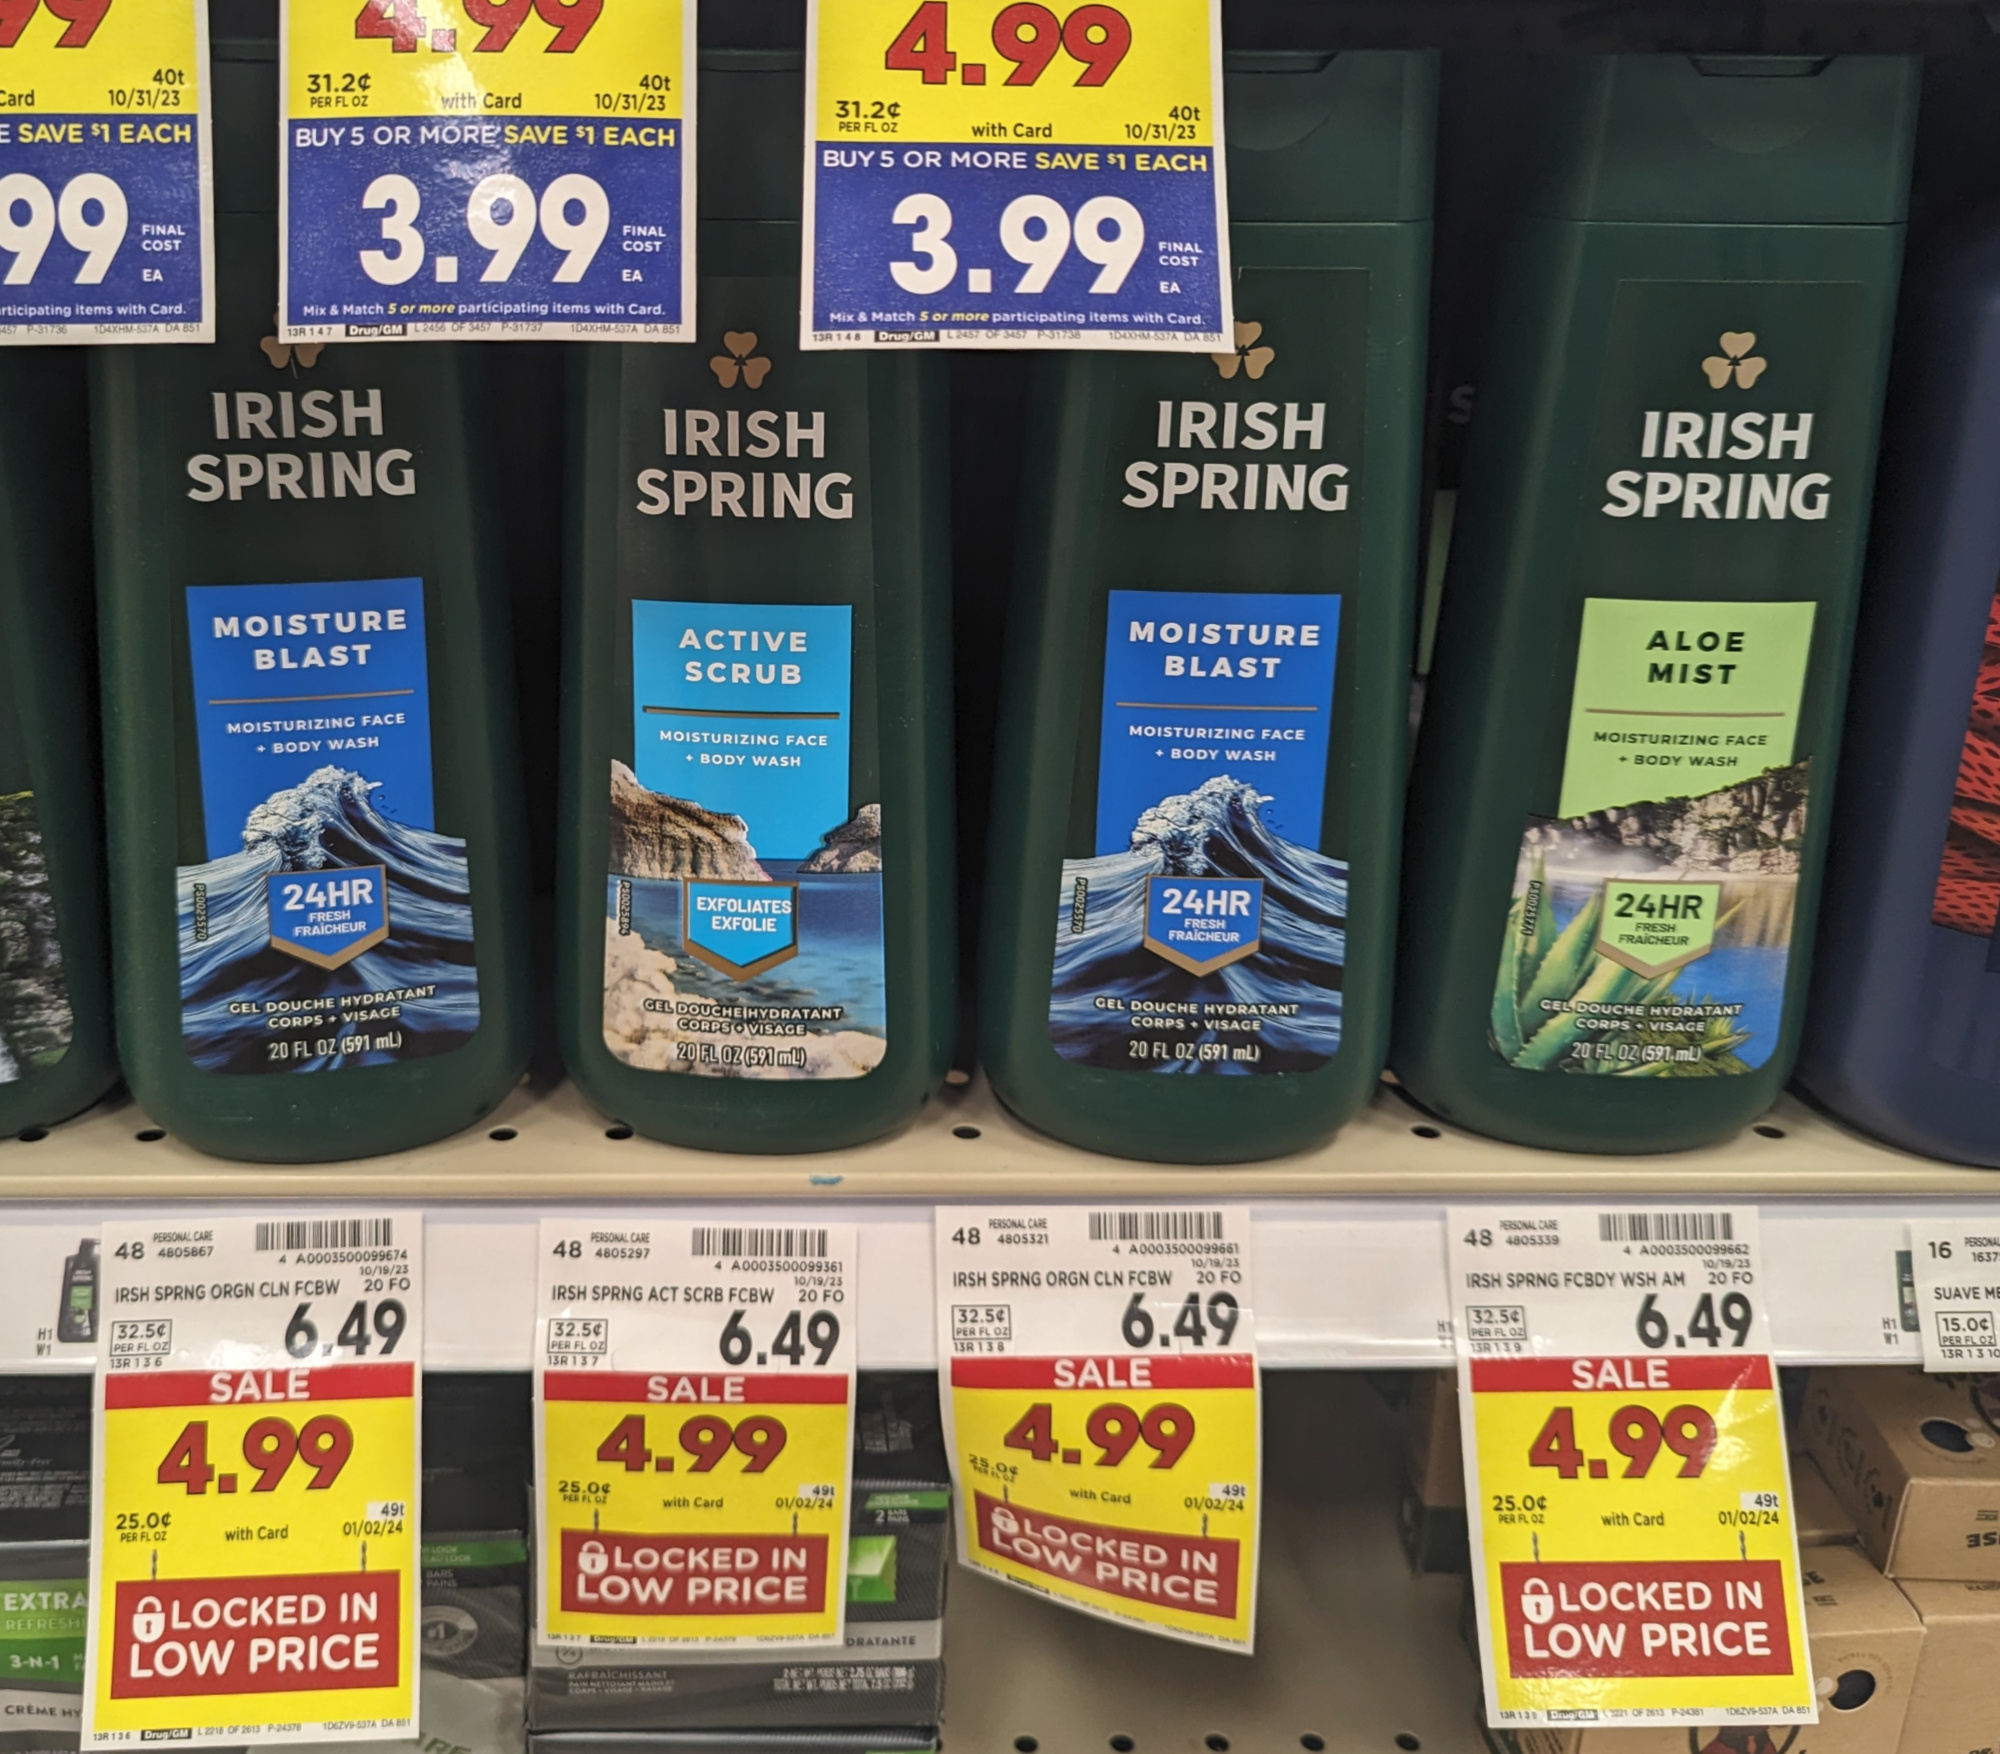 Irish Spring Body Wash As Low As $3.99 At Kroger (Regular Price $6.49)